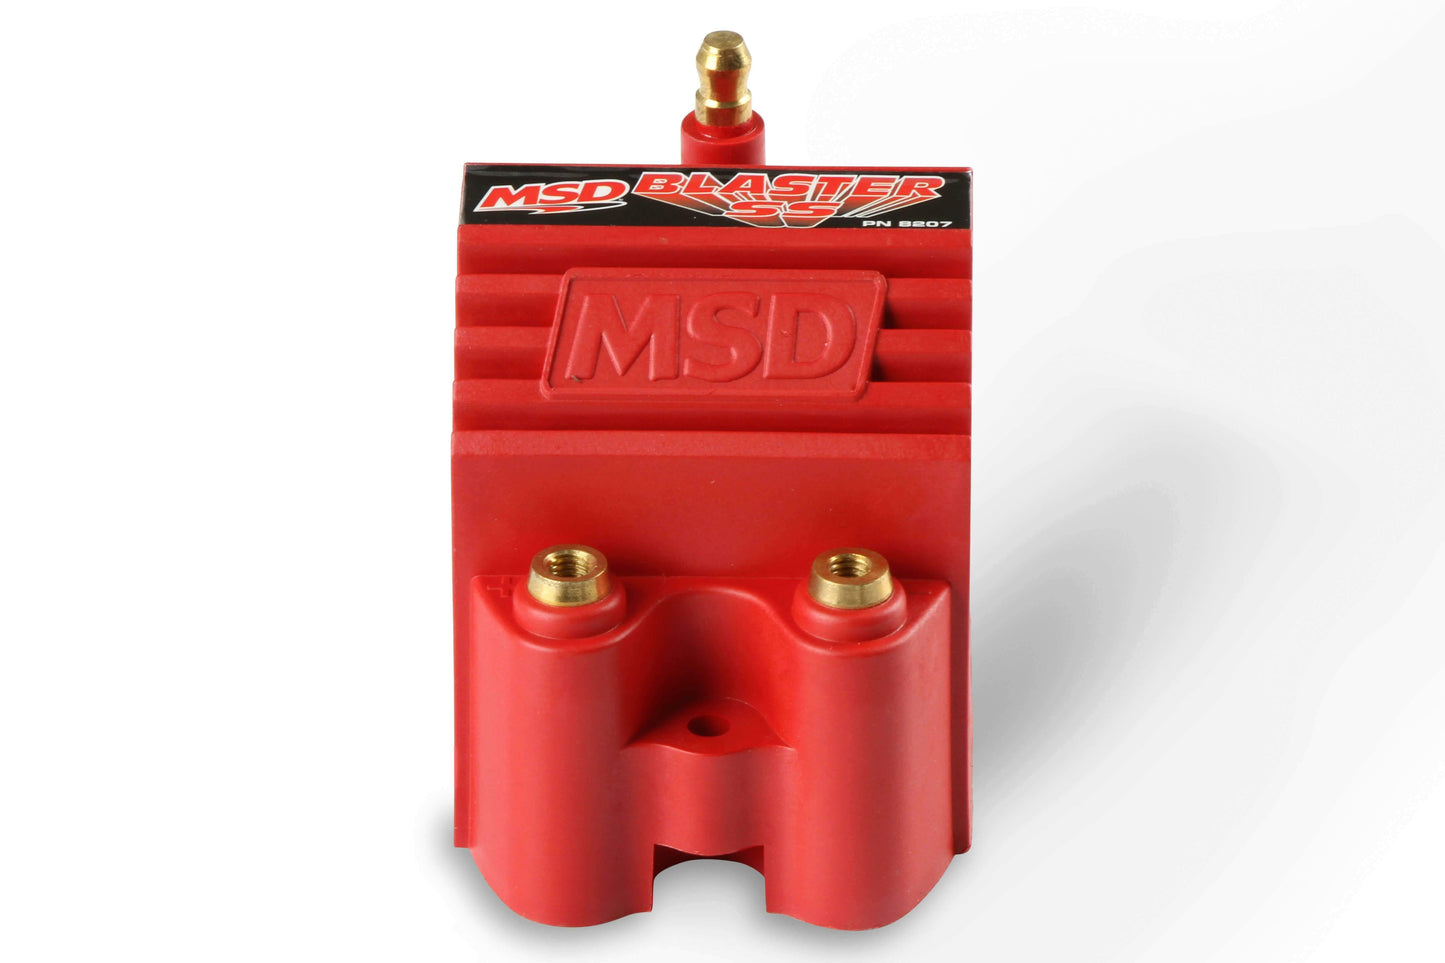 MSD 8207 MSD Ignition Blaster SS Coil High Voltage -40,000V E-Core Square Epoxy